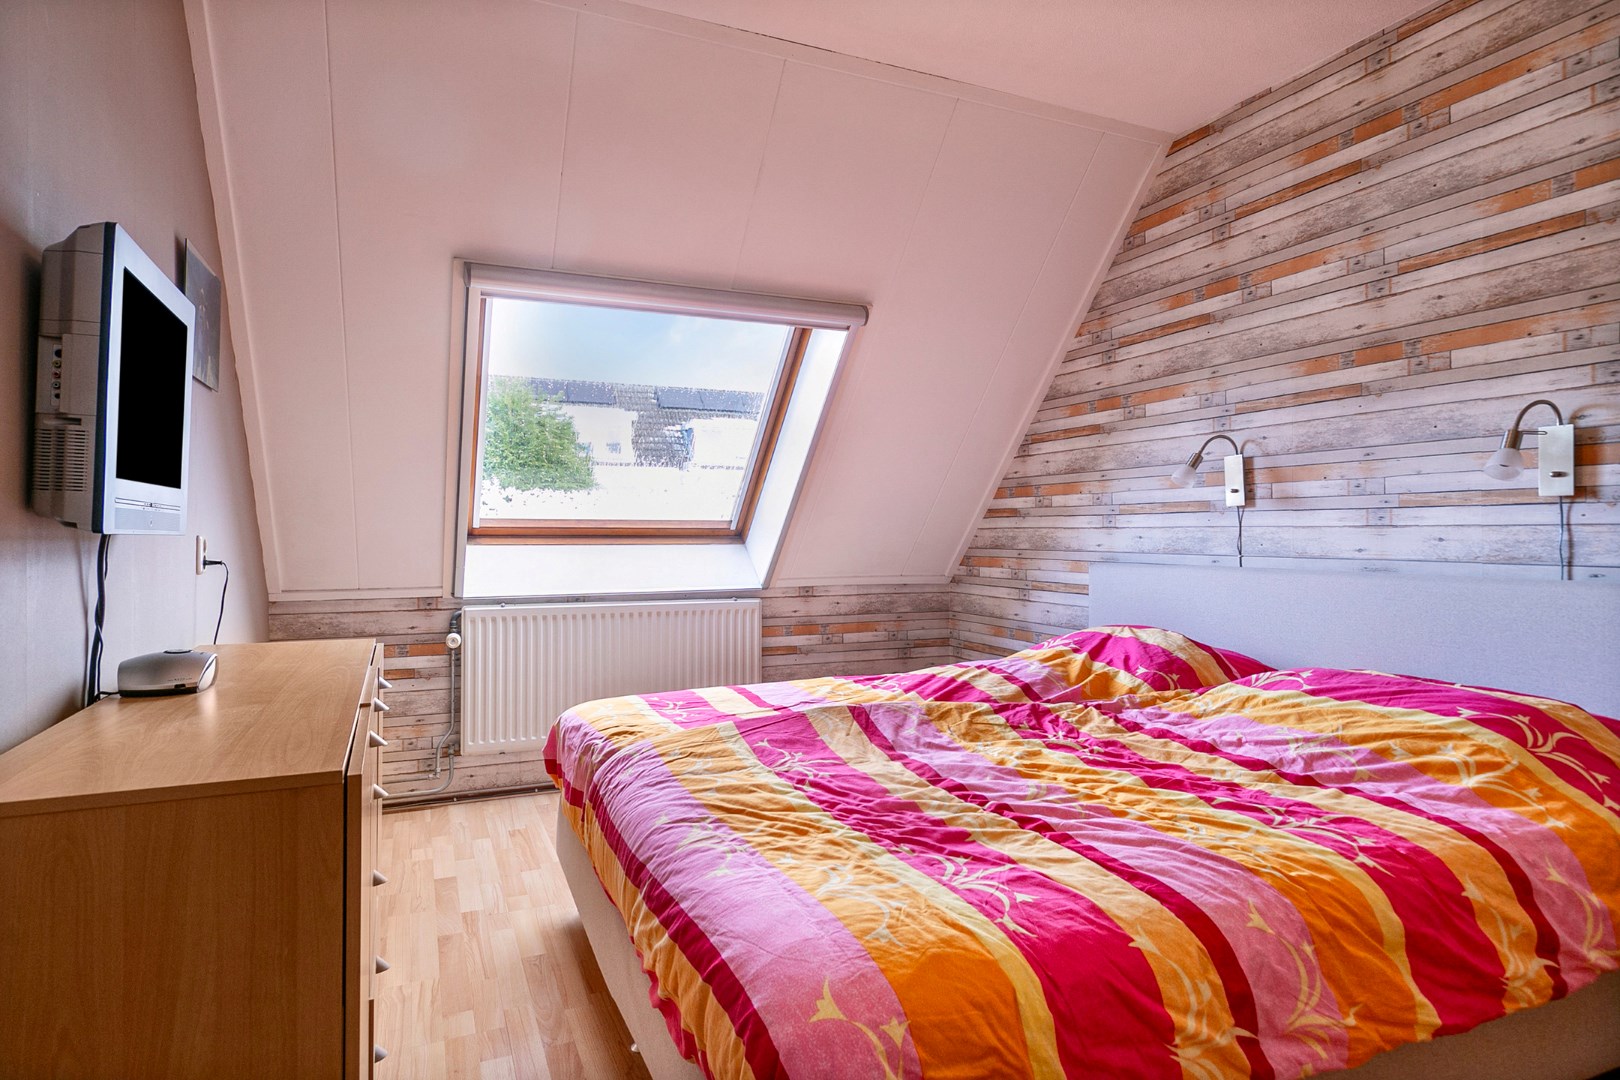 Keurige 5-kamer tussenwoning met een dakkapel aan de voorzijde, zonnepanelen en ruime tuin met houten berging. 